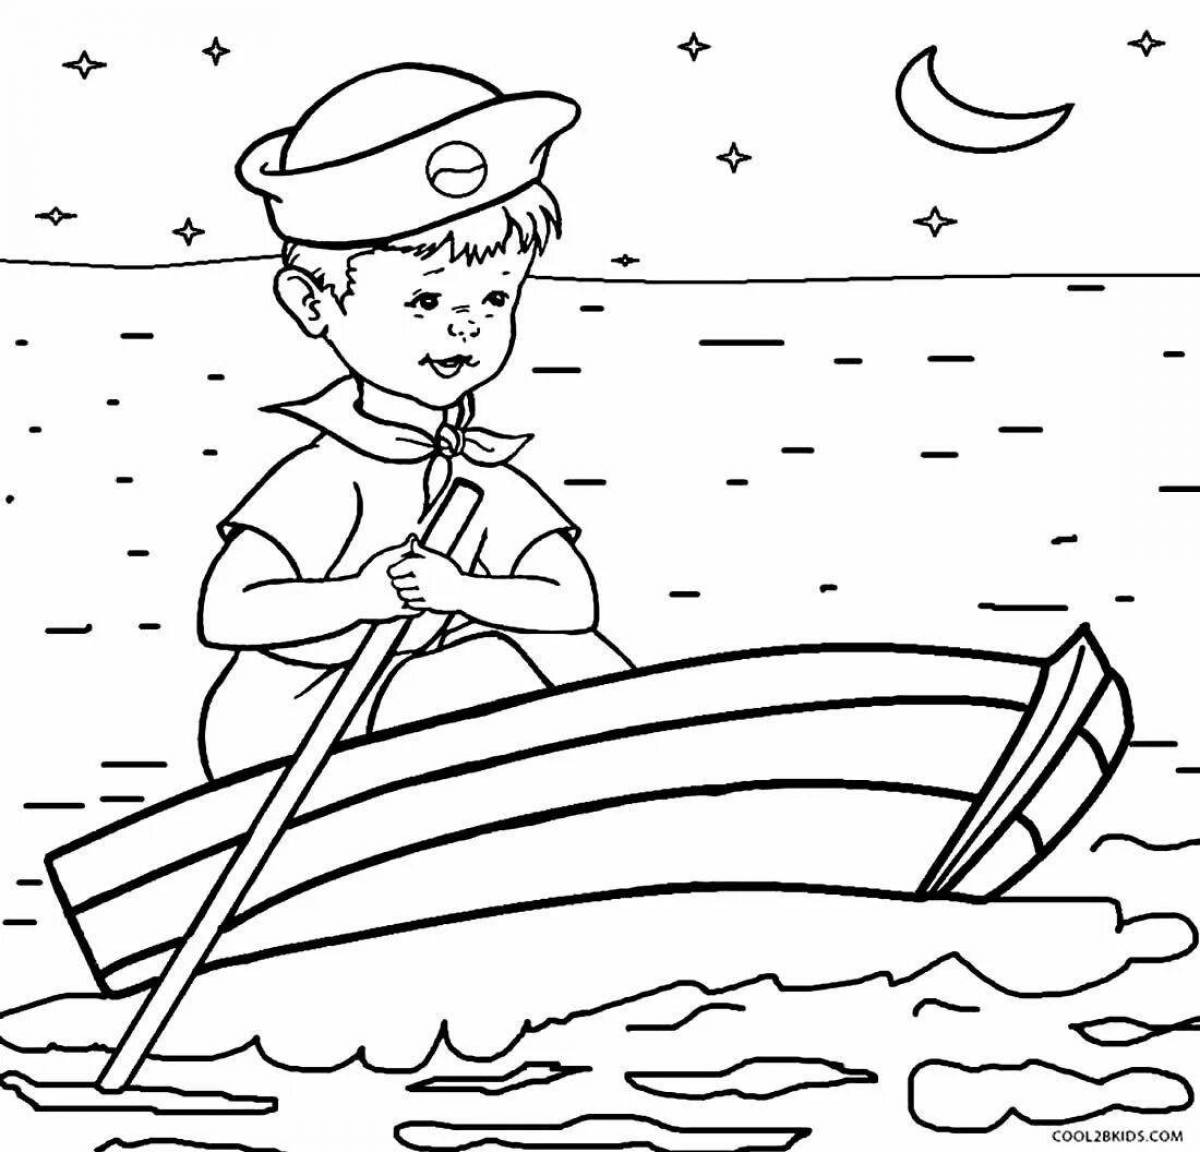 Лодка раскраска для детей